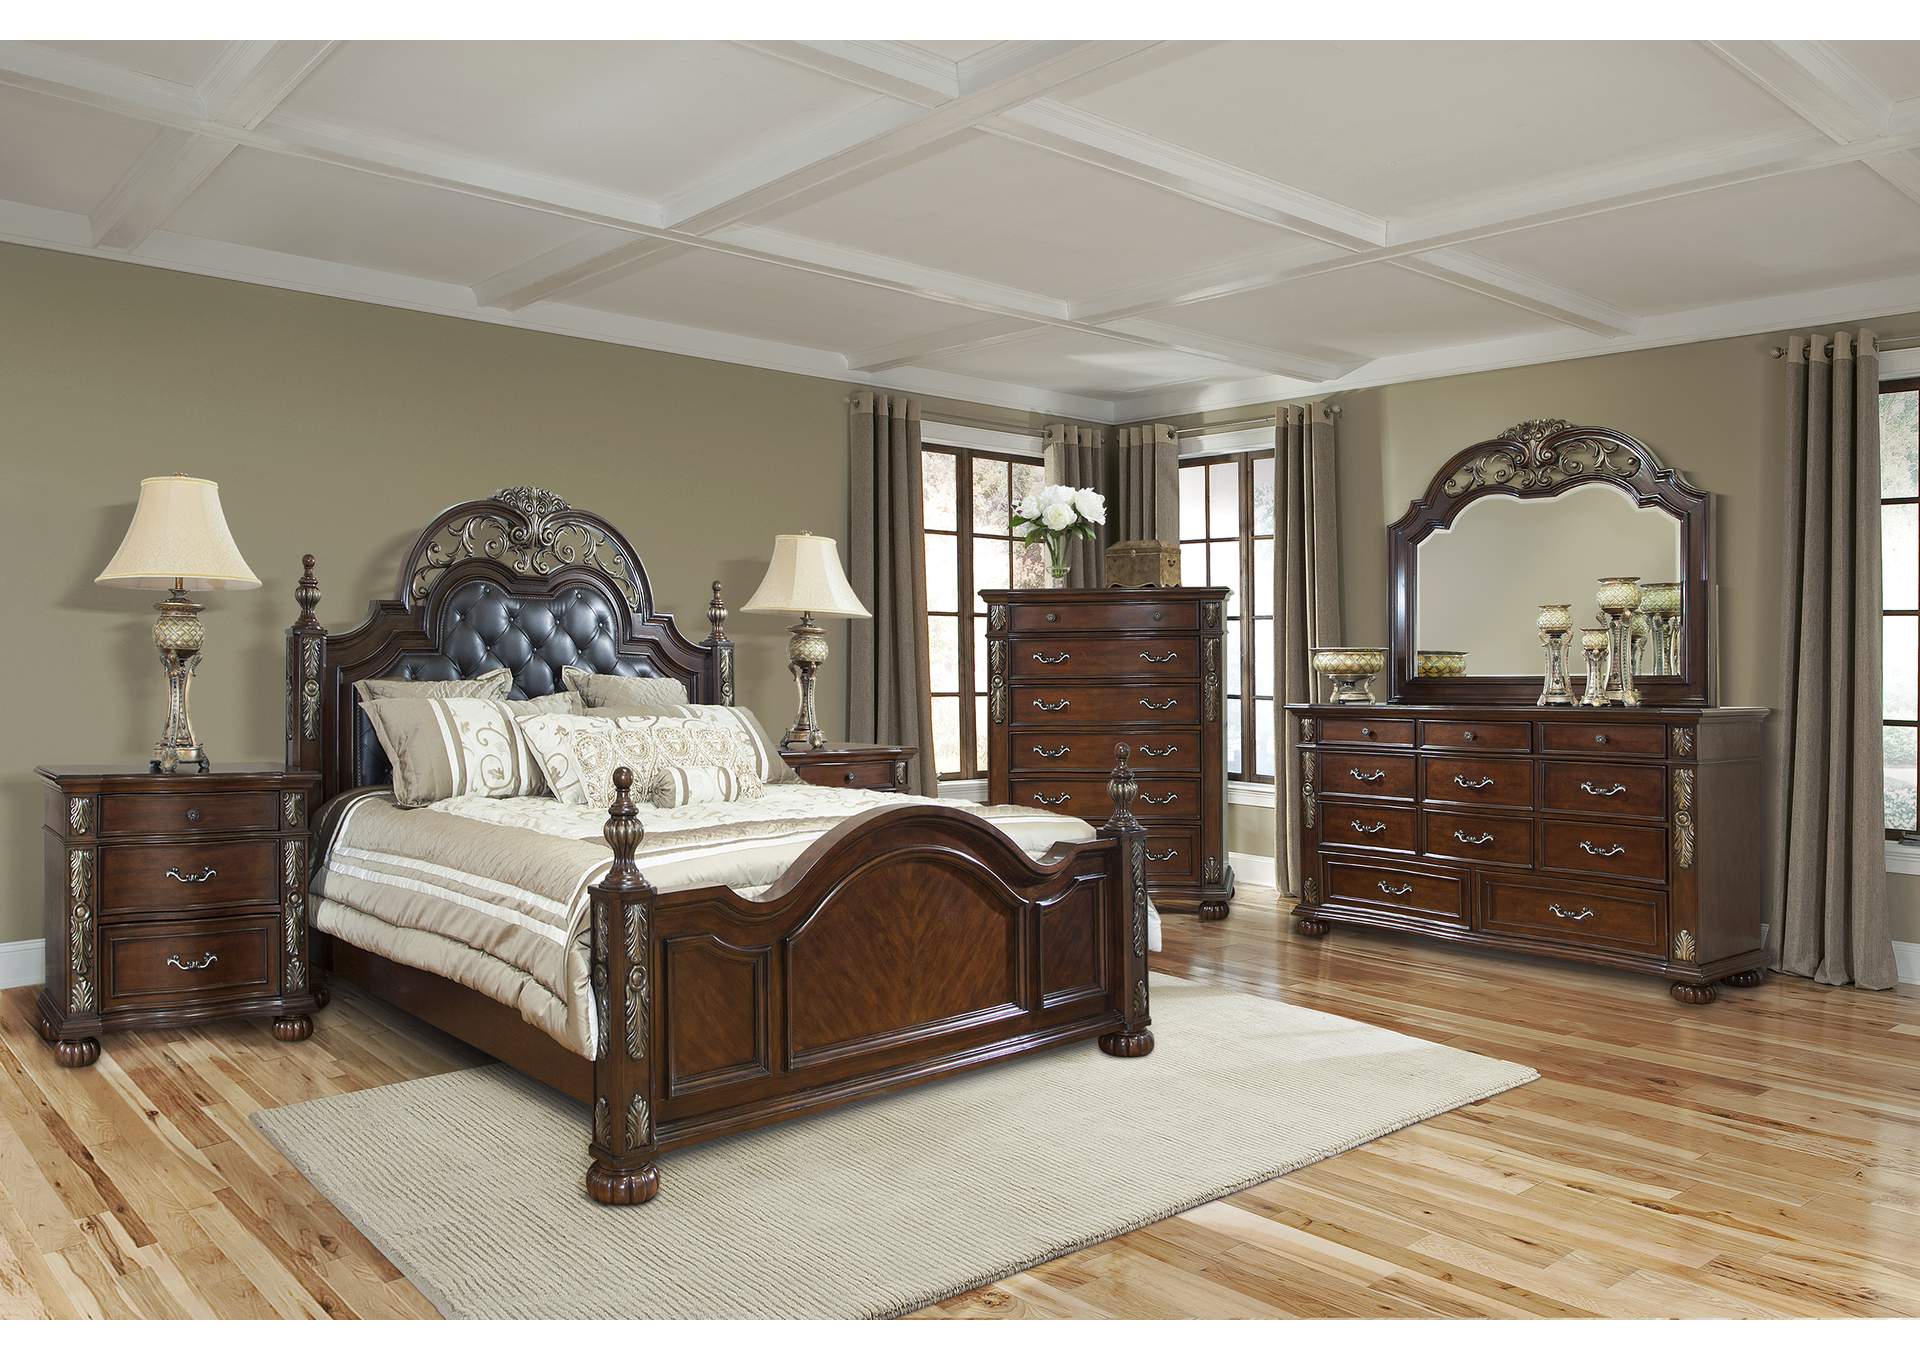 Rosanna Cherry Queen Bedroom Set - Bed, Dresser, Mirror, 2 Nightstands, Chest,Cosmos Furniture